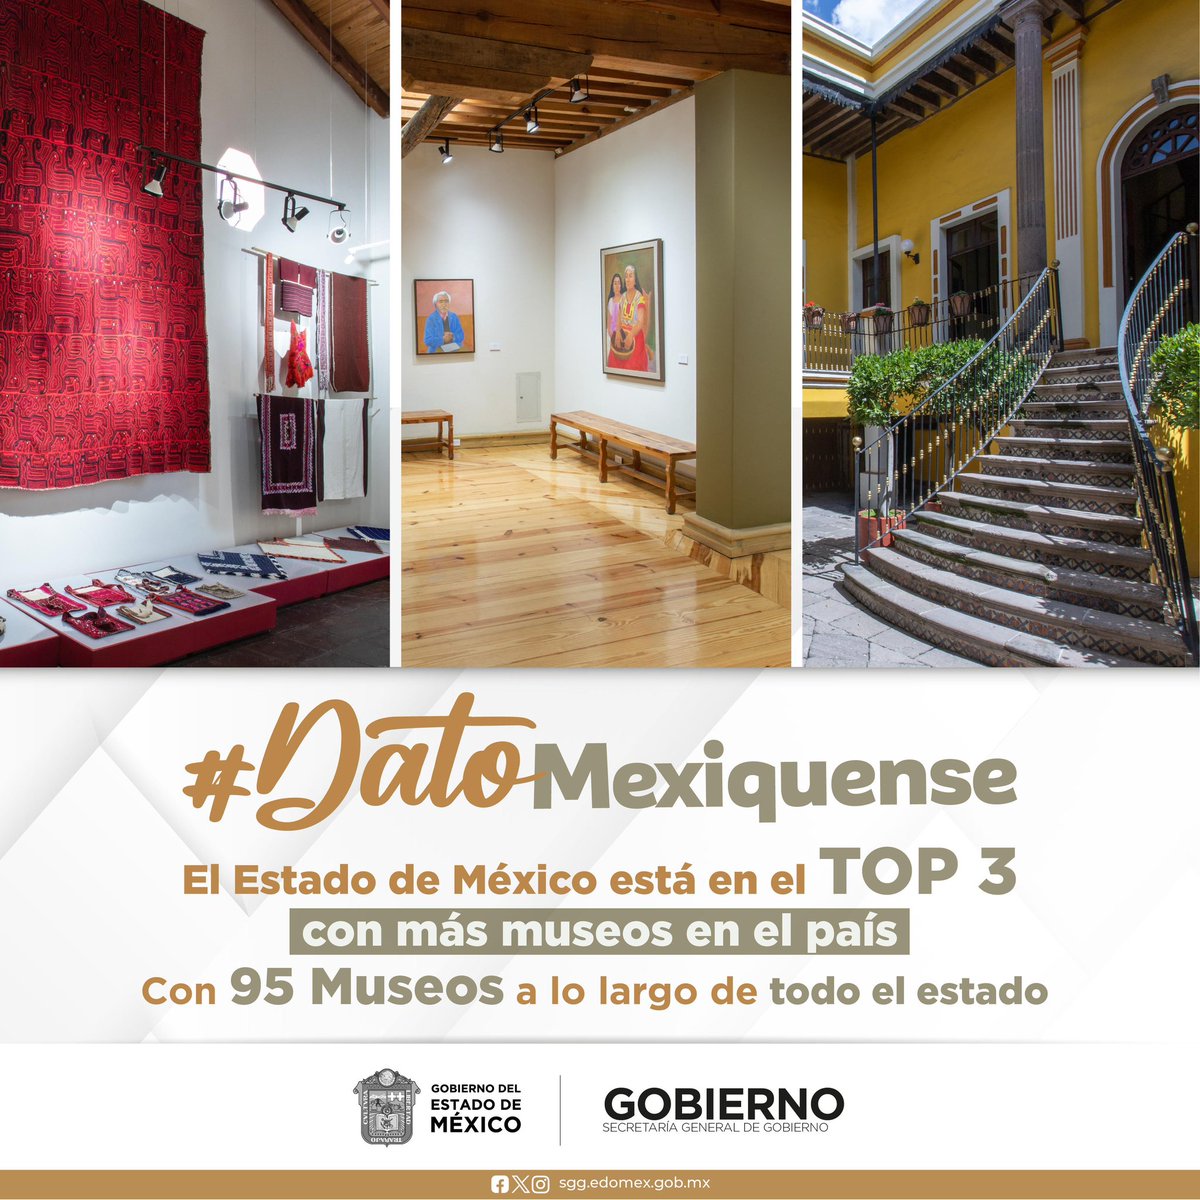 #DatoMexiquense ¿Sabías que el Estado de México está en el Top 3 de lugares con más museos?
No te pierdas la oportunidad de conocer más sobre nuestra historia y cultura. ¡Visítalos!
#OrgulloMexiquense #EdoMex